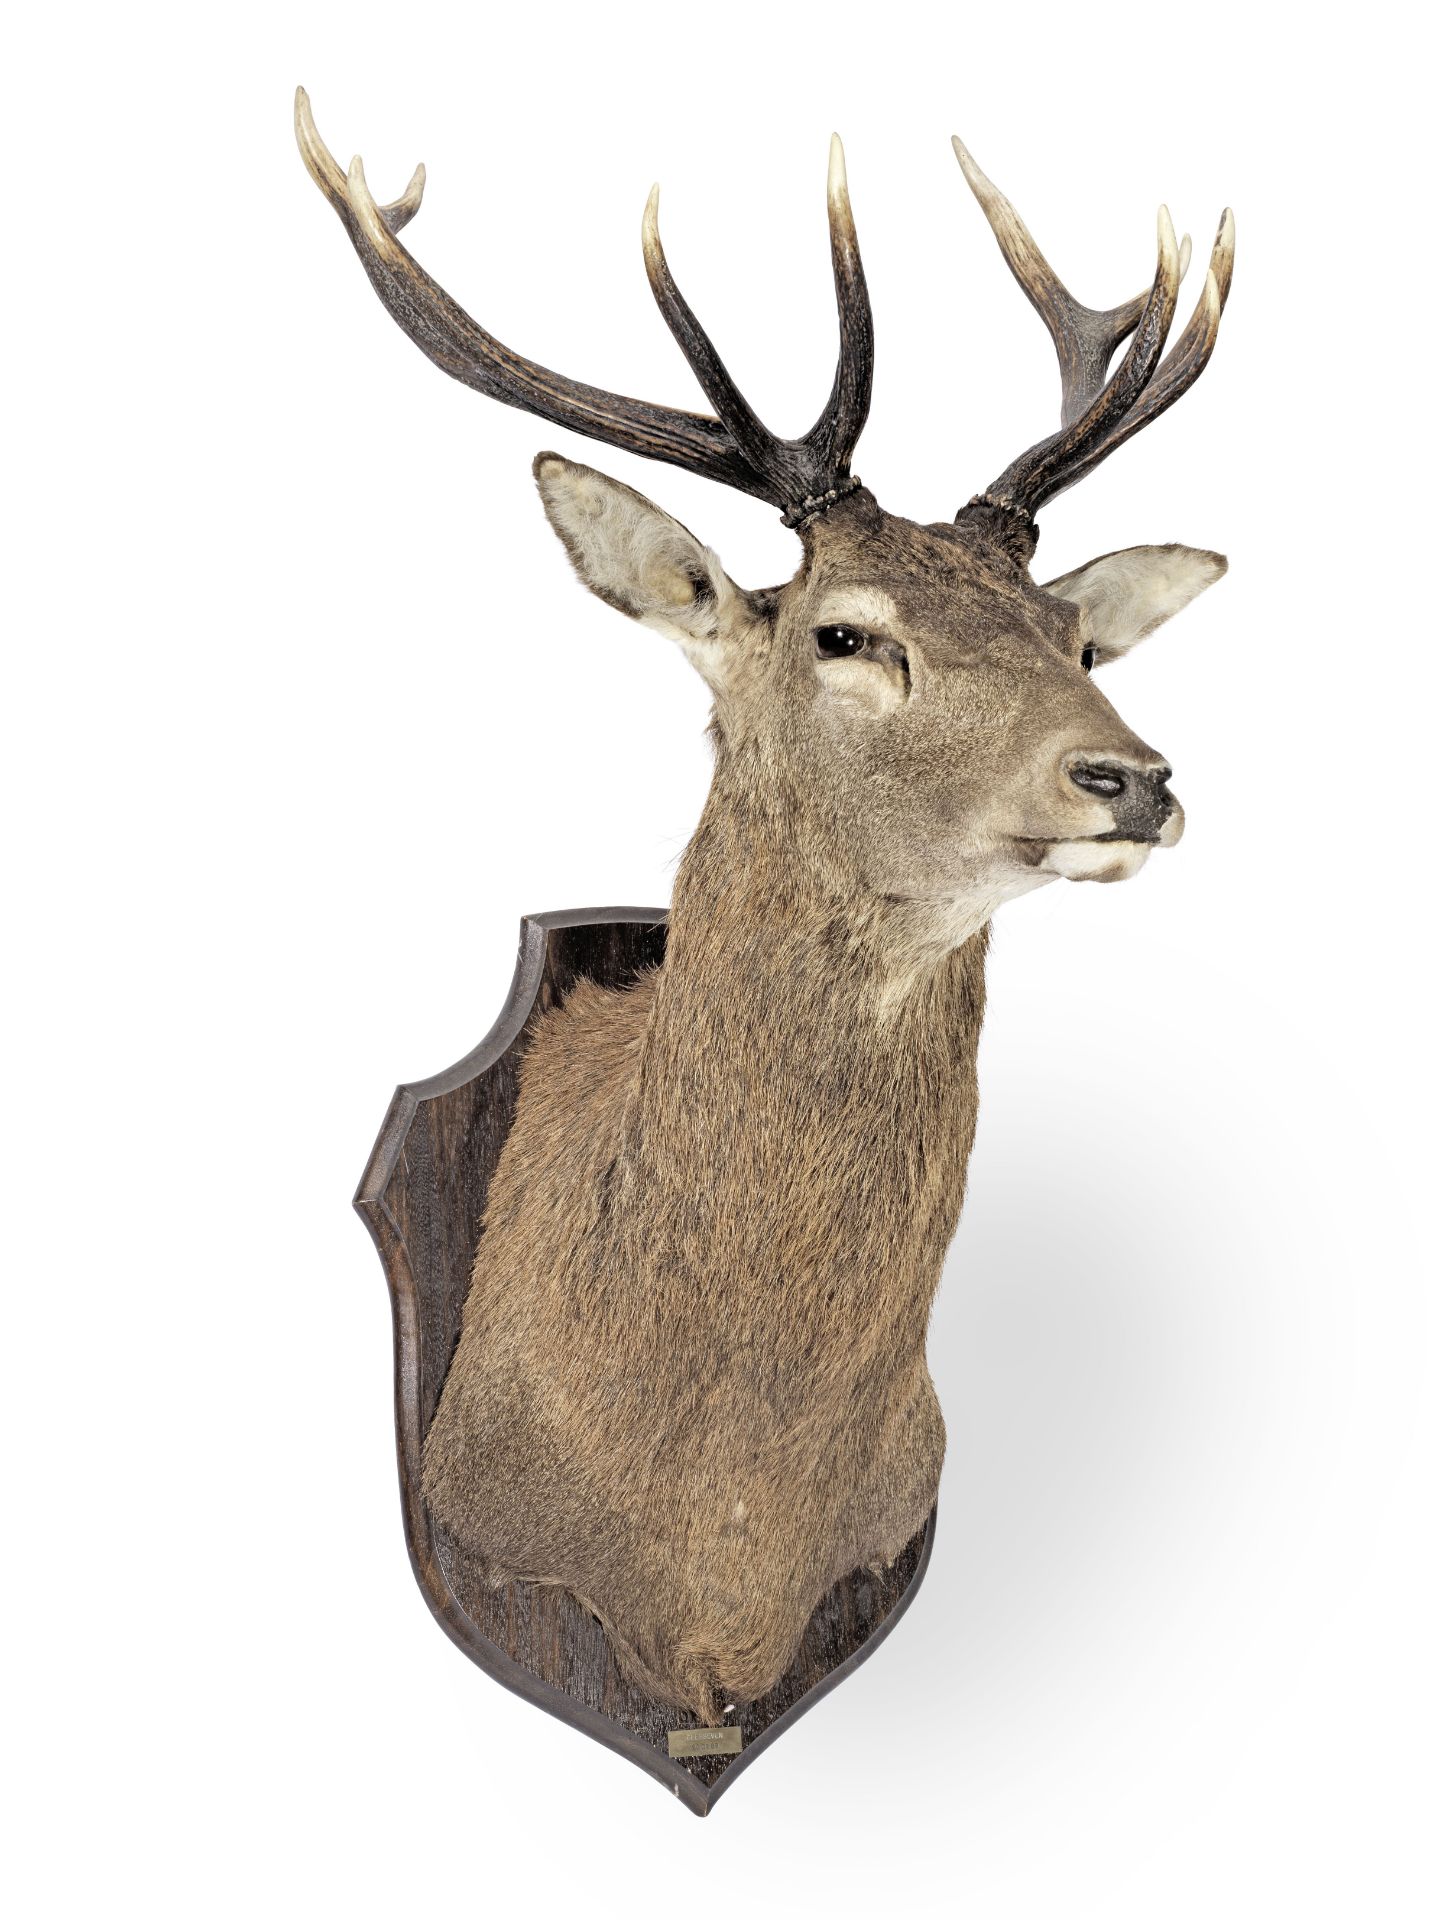 A large and impressive mounted deer's head (cervus elaphus) trophy